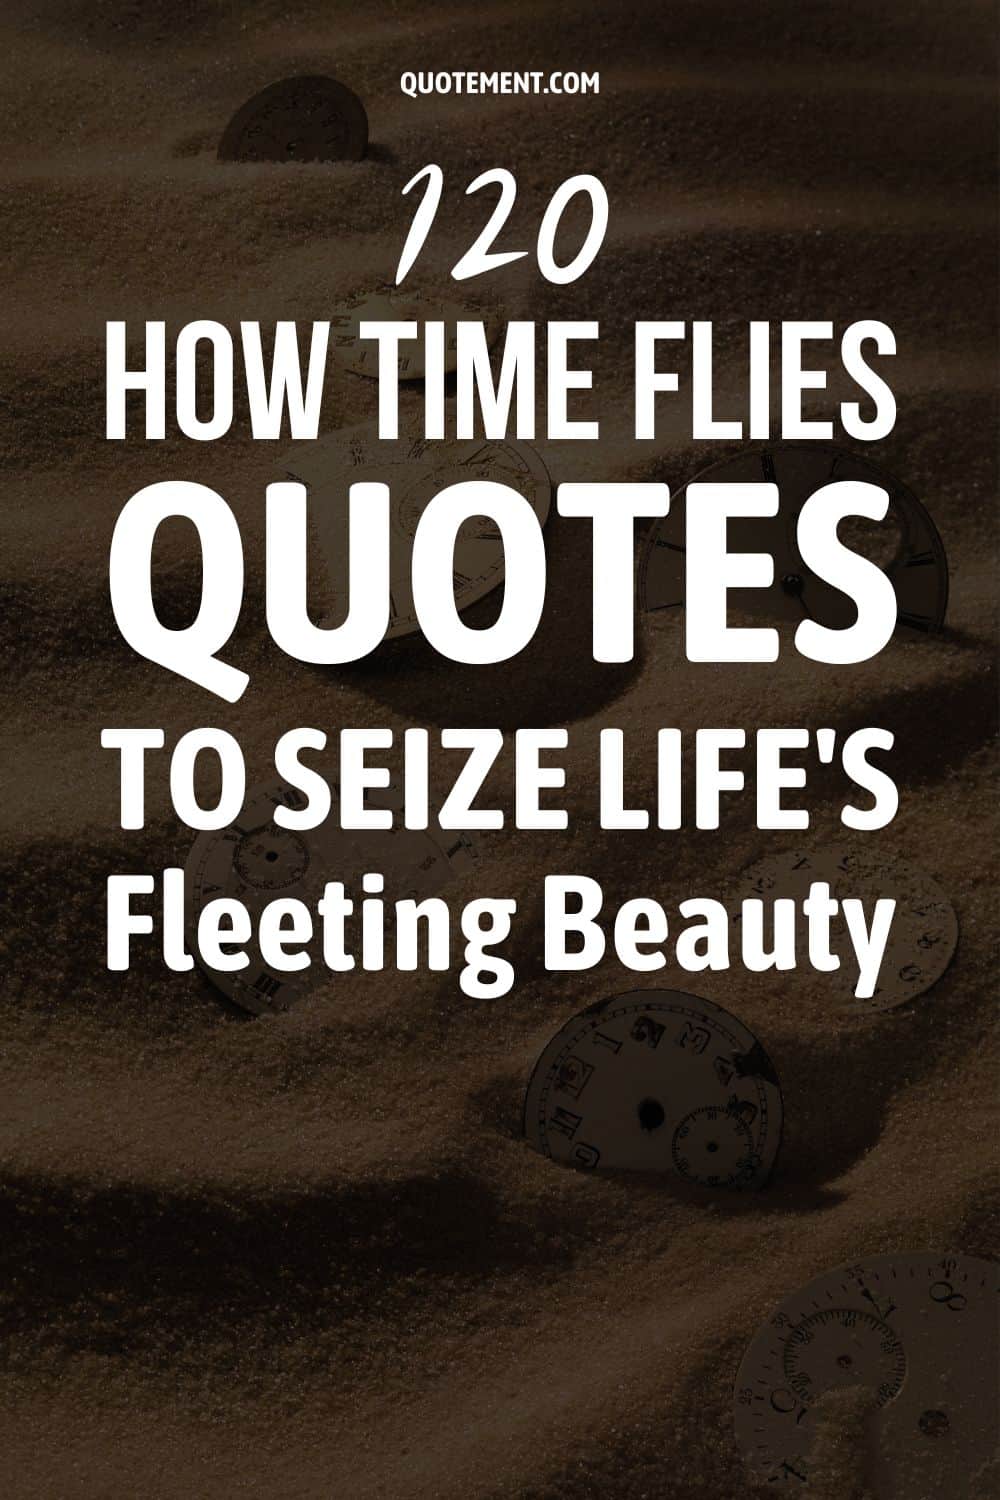 120 citas de Cómo vuela el tiempo para aprovechar la belleza fugaz de la vida